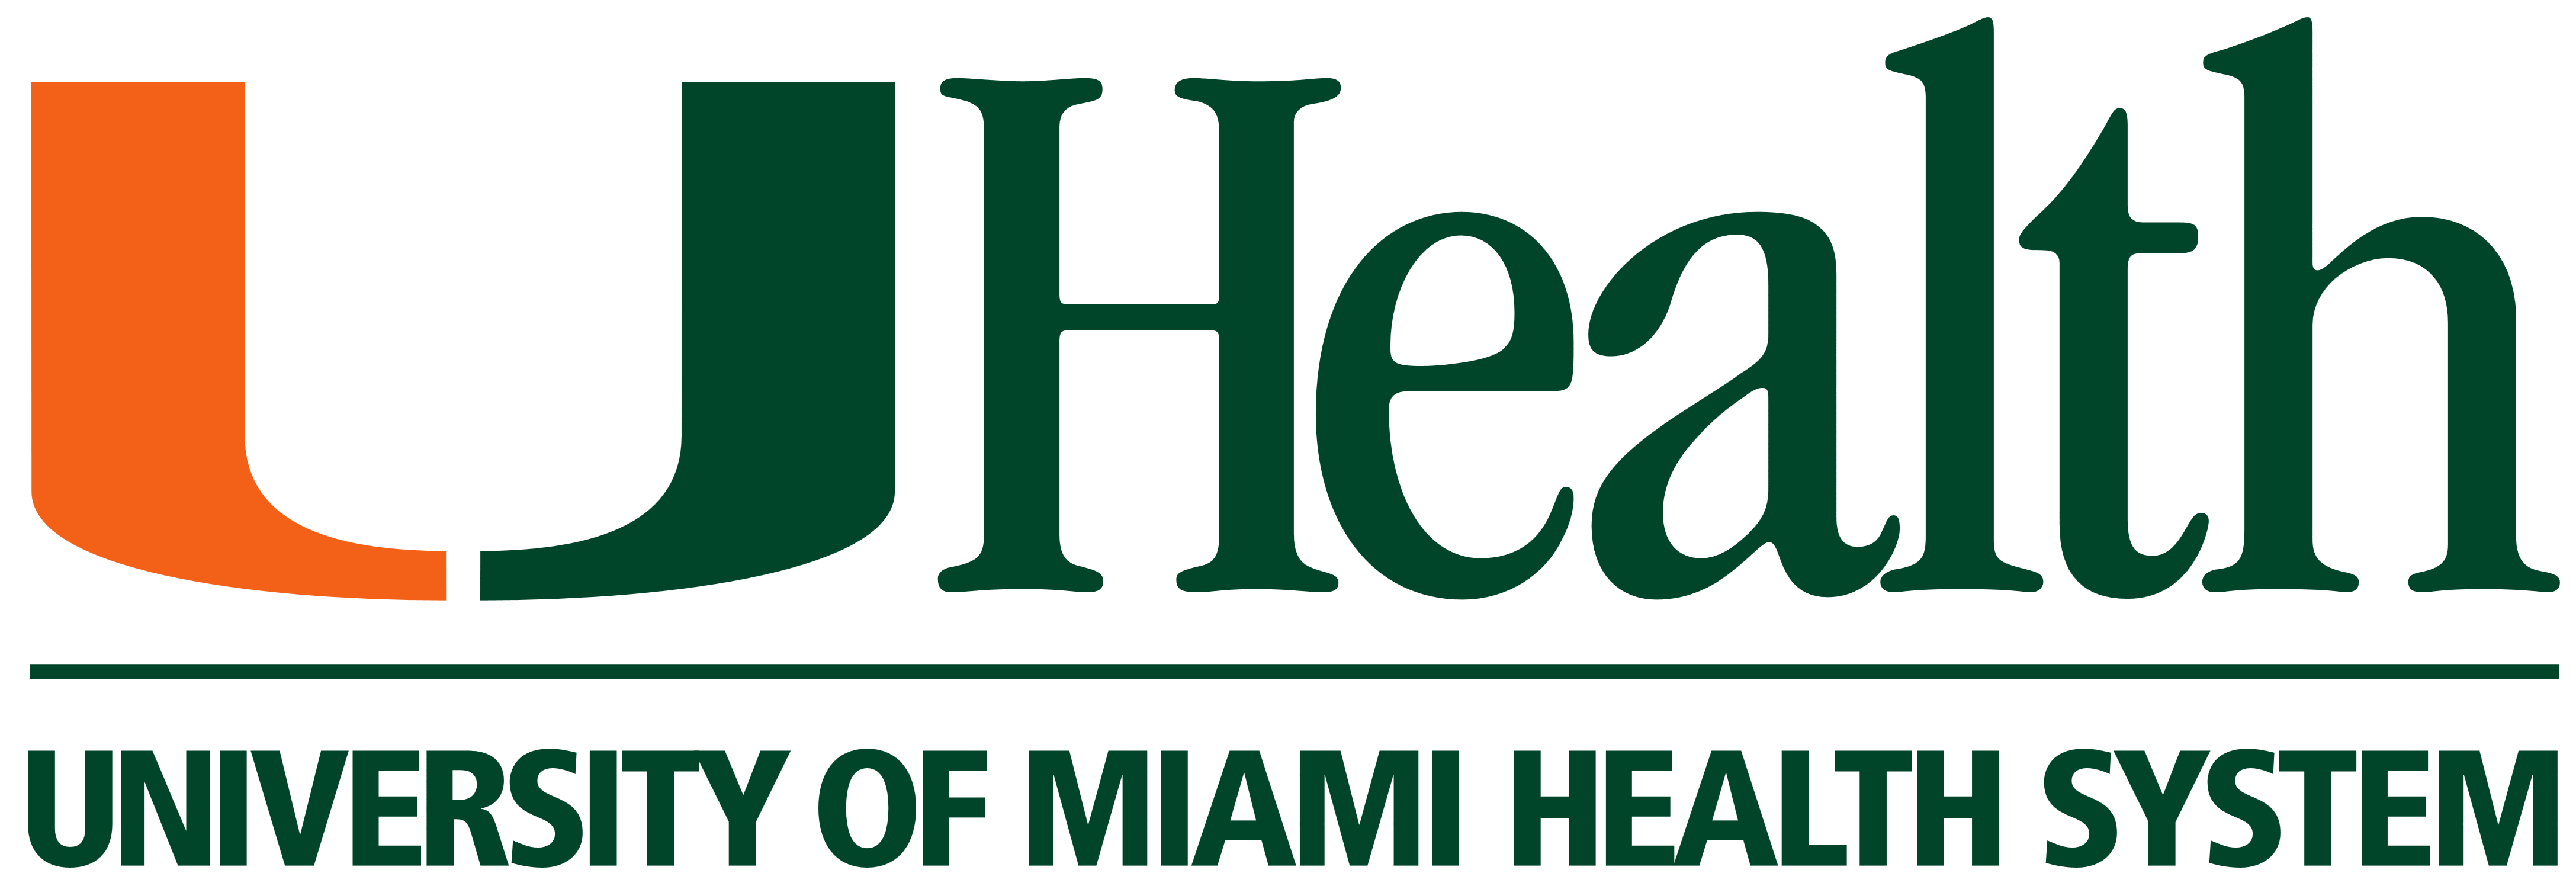 UHealth Logo - UHealth (University of Miami Health System) – Logos Download